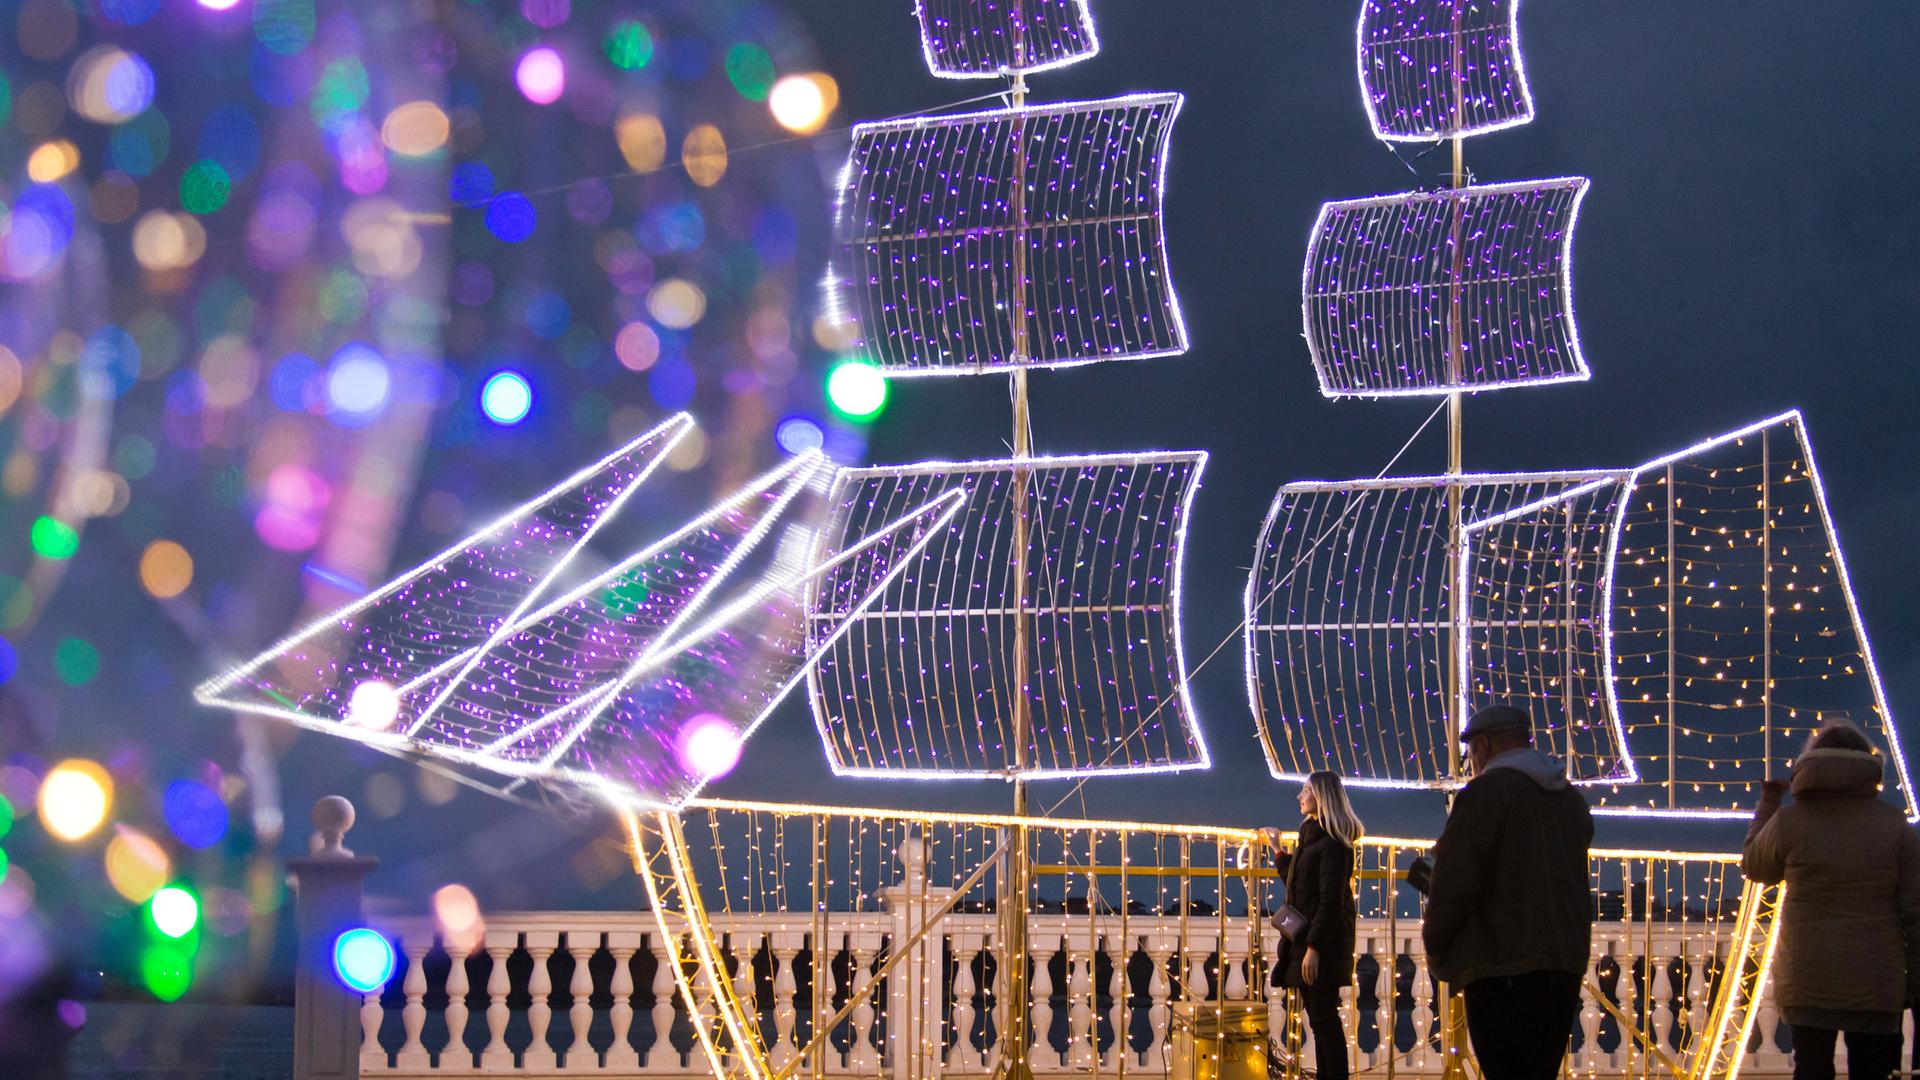 Bunte Lichter deuten am Meeresrand eine Schiffssilhouette an, die zu einer Weihnachtsbeleuchtung gehört.